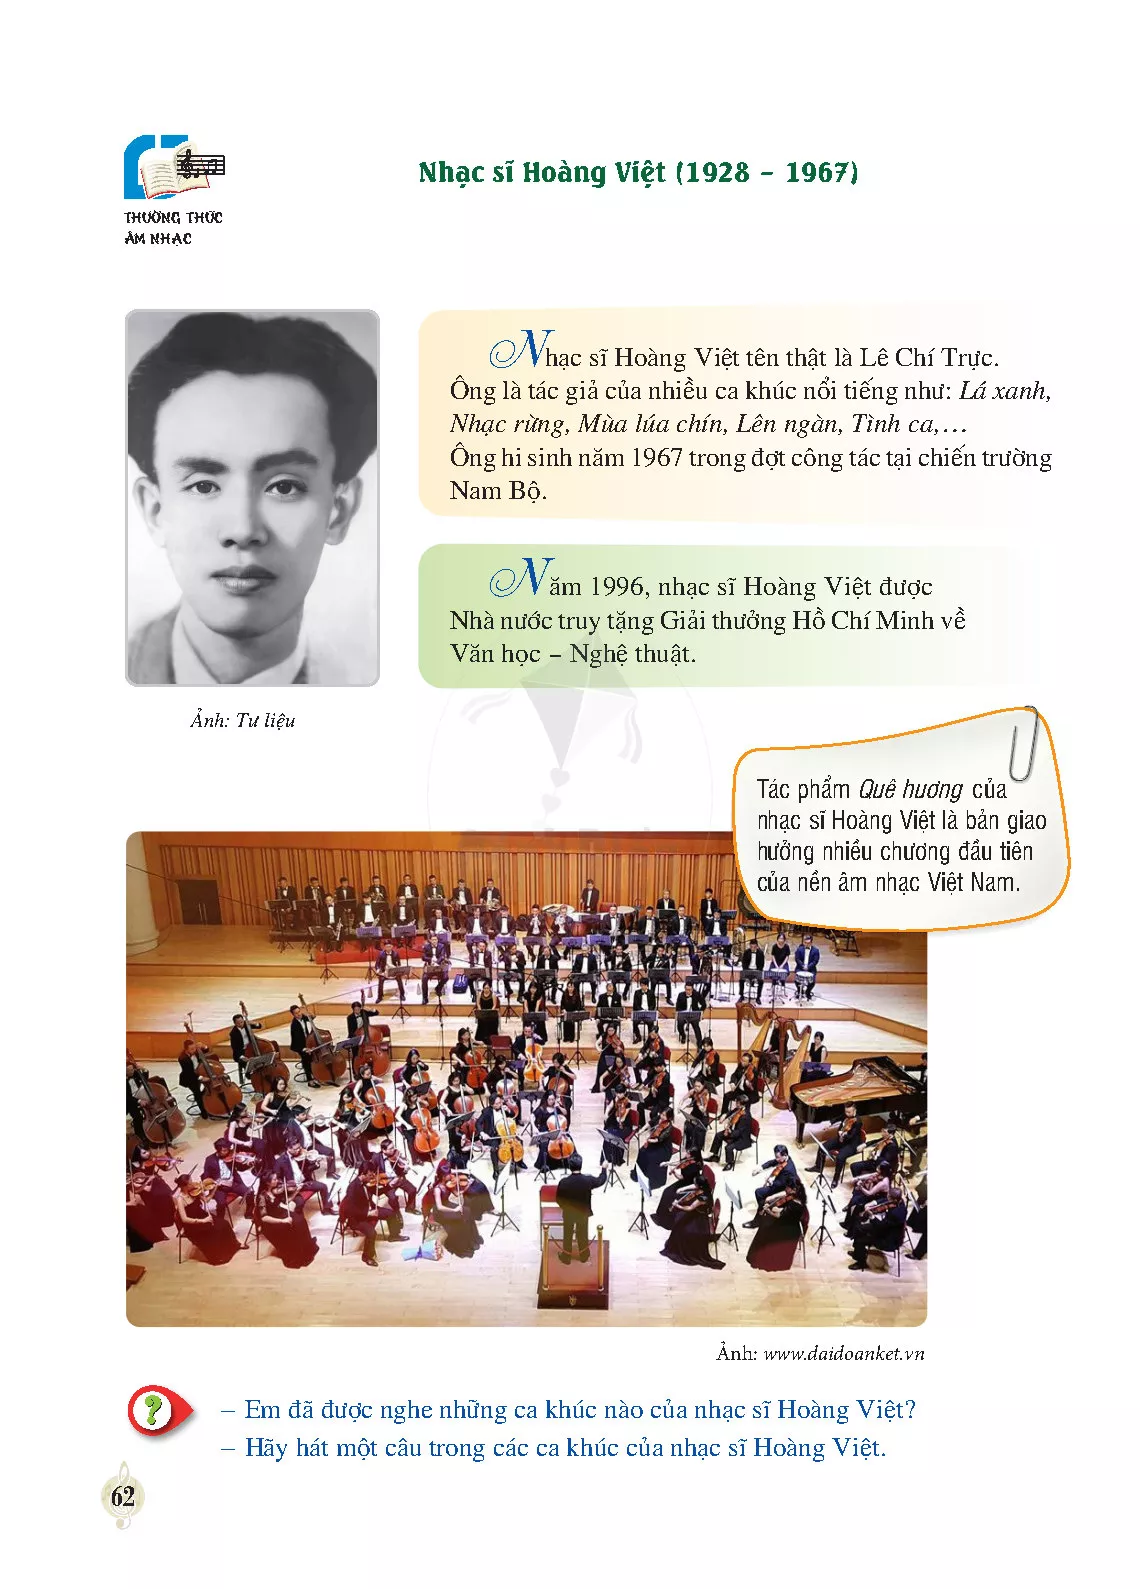 Thường thức âm nhạc: Nhạc sĩ Hoàng Việt 